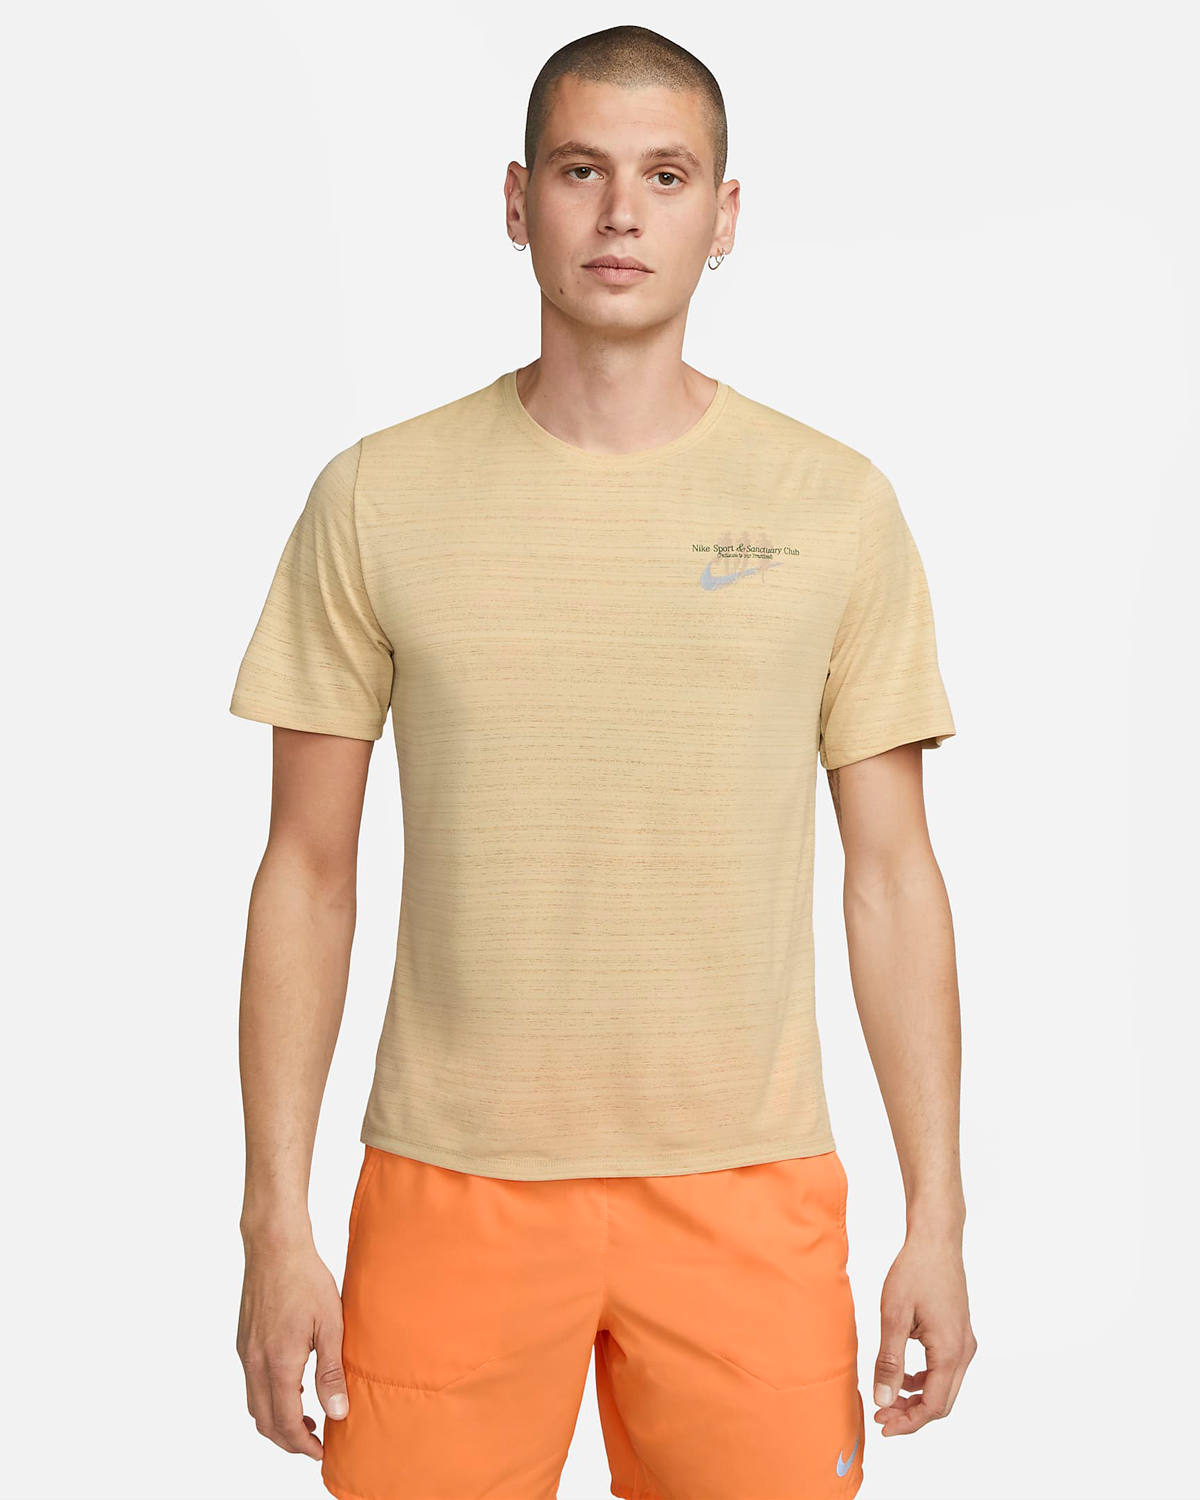 Nike-Miler-Sport-Sanctuary-T-Shirt-Sesame-Orange-1